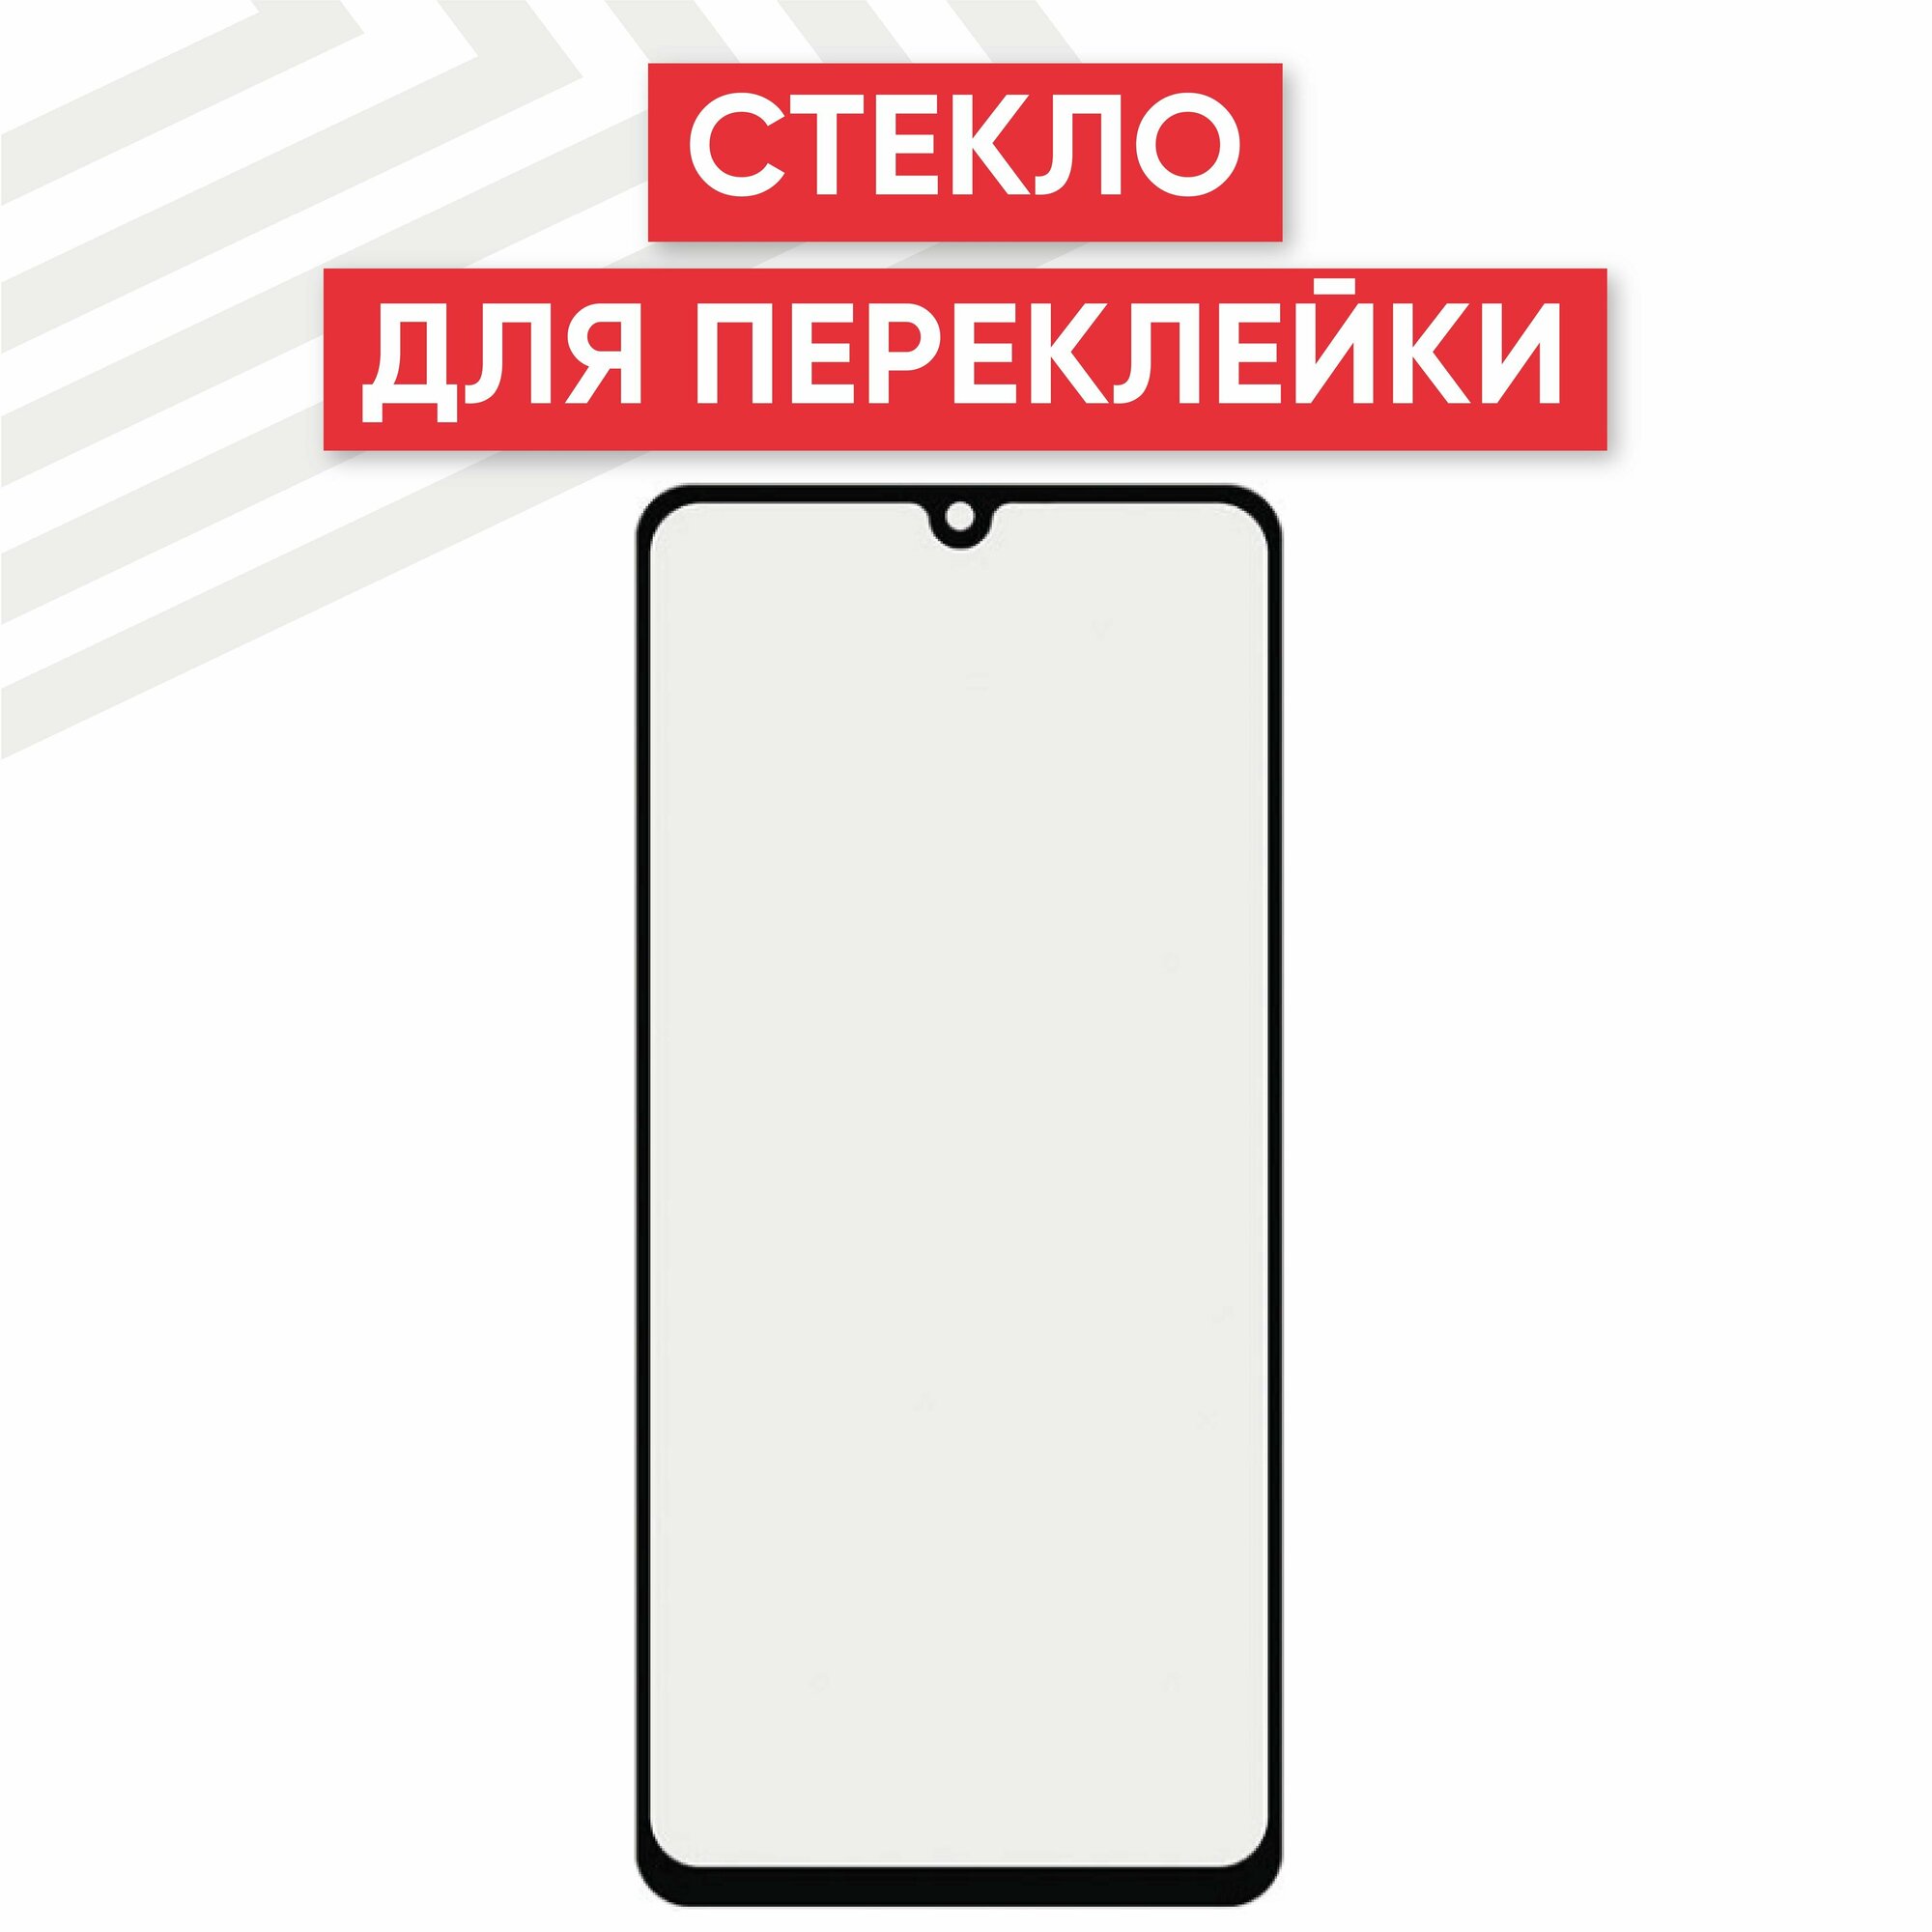 Стекло переклейки дисплея для мобильного телефона (смартфона) Samsung Galaxy A41 (A415F), черное